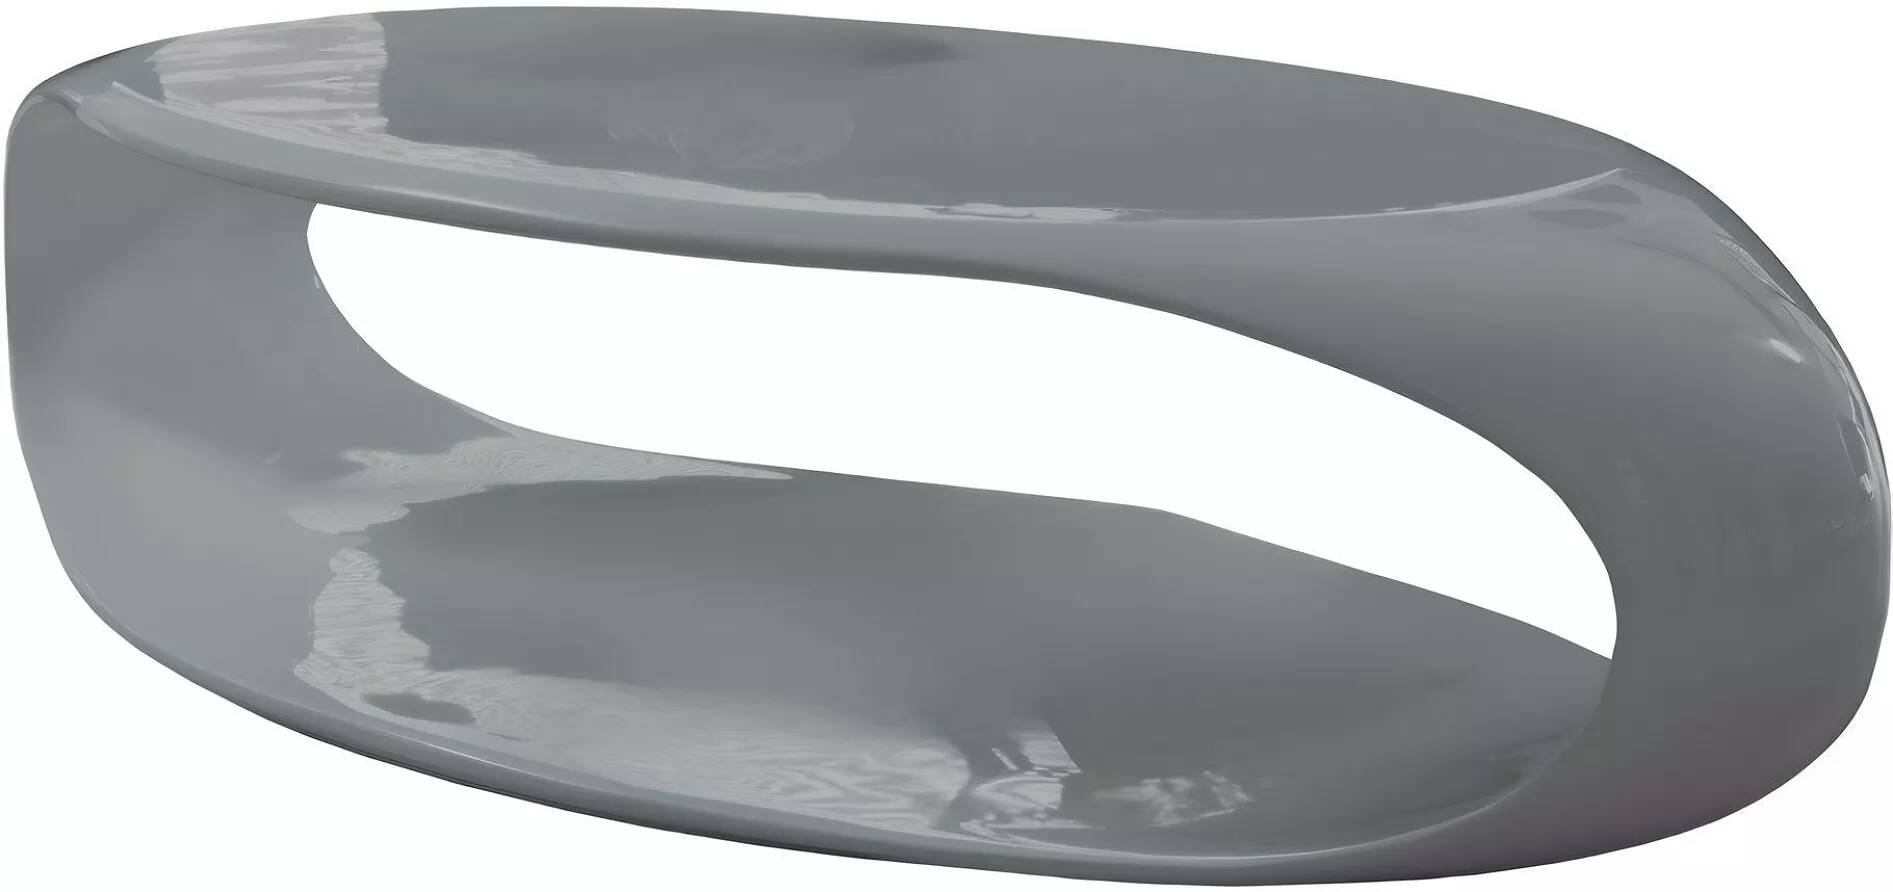 Table basse design en fibre de verre gris laqué L120